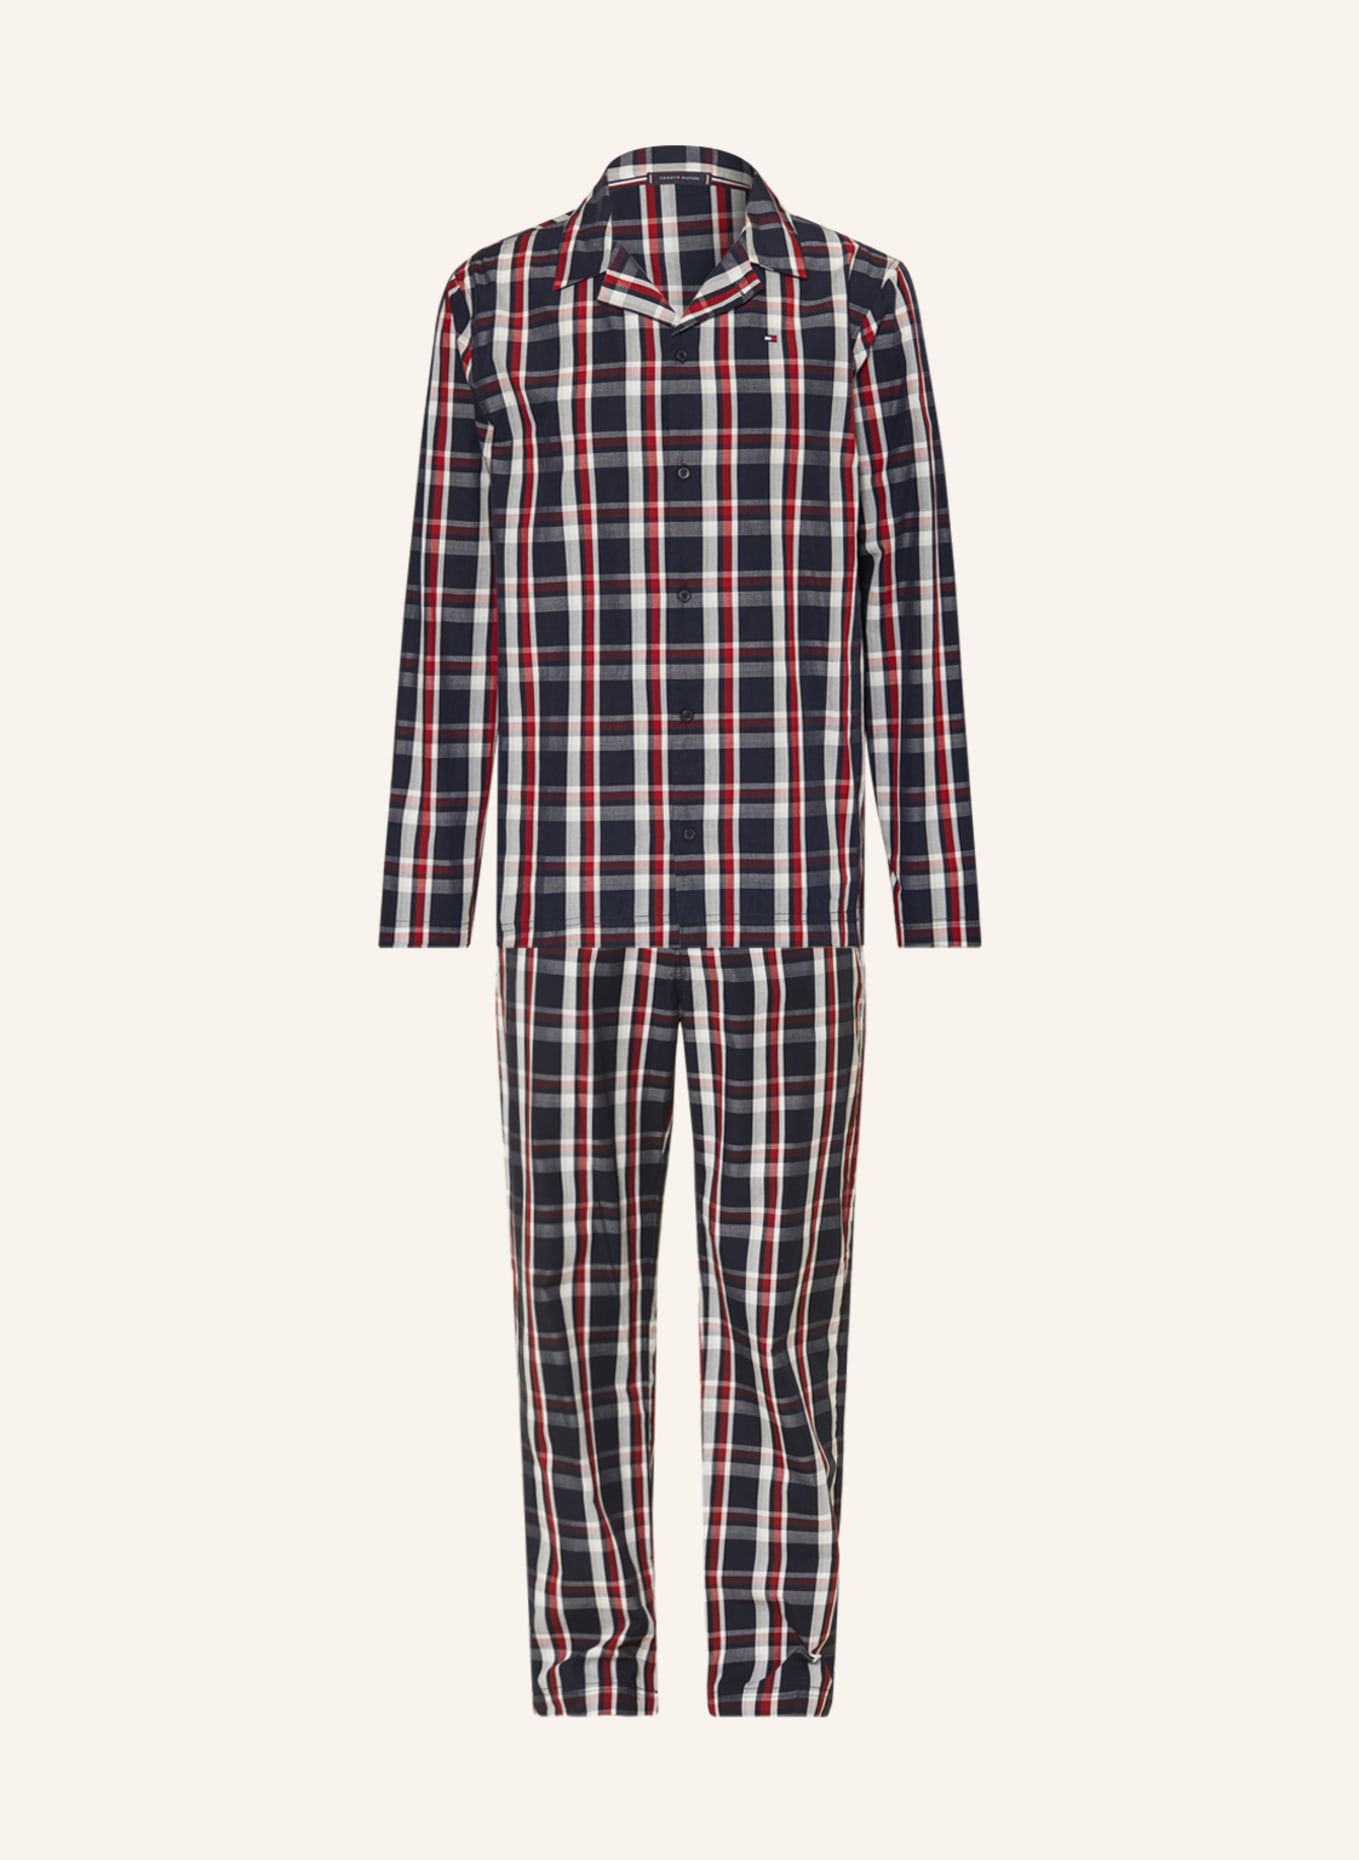 TOMMY HILFIGER Schlafanzug, Farbe: DUNKELBLAU/ WEISS/ DUNKELROT (Bild 1)